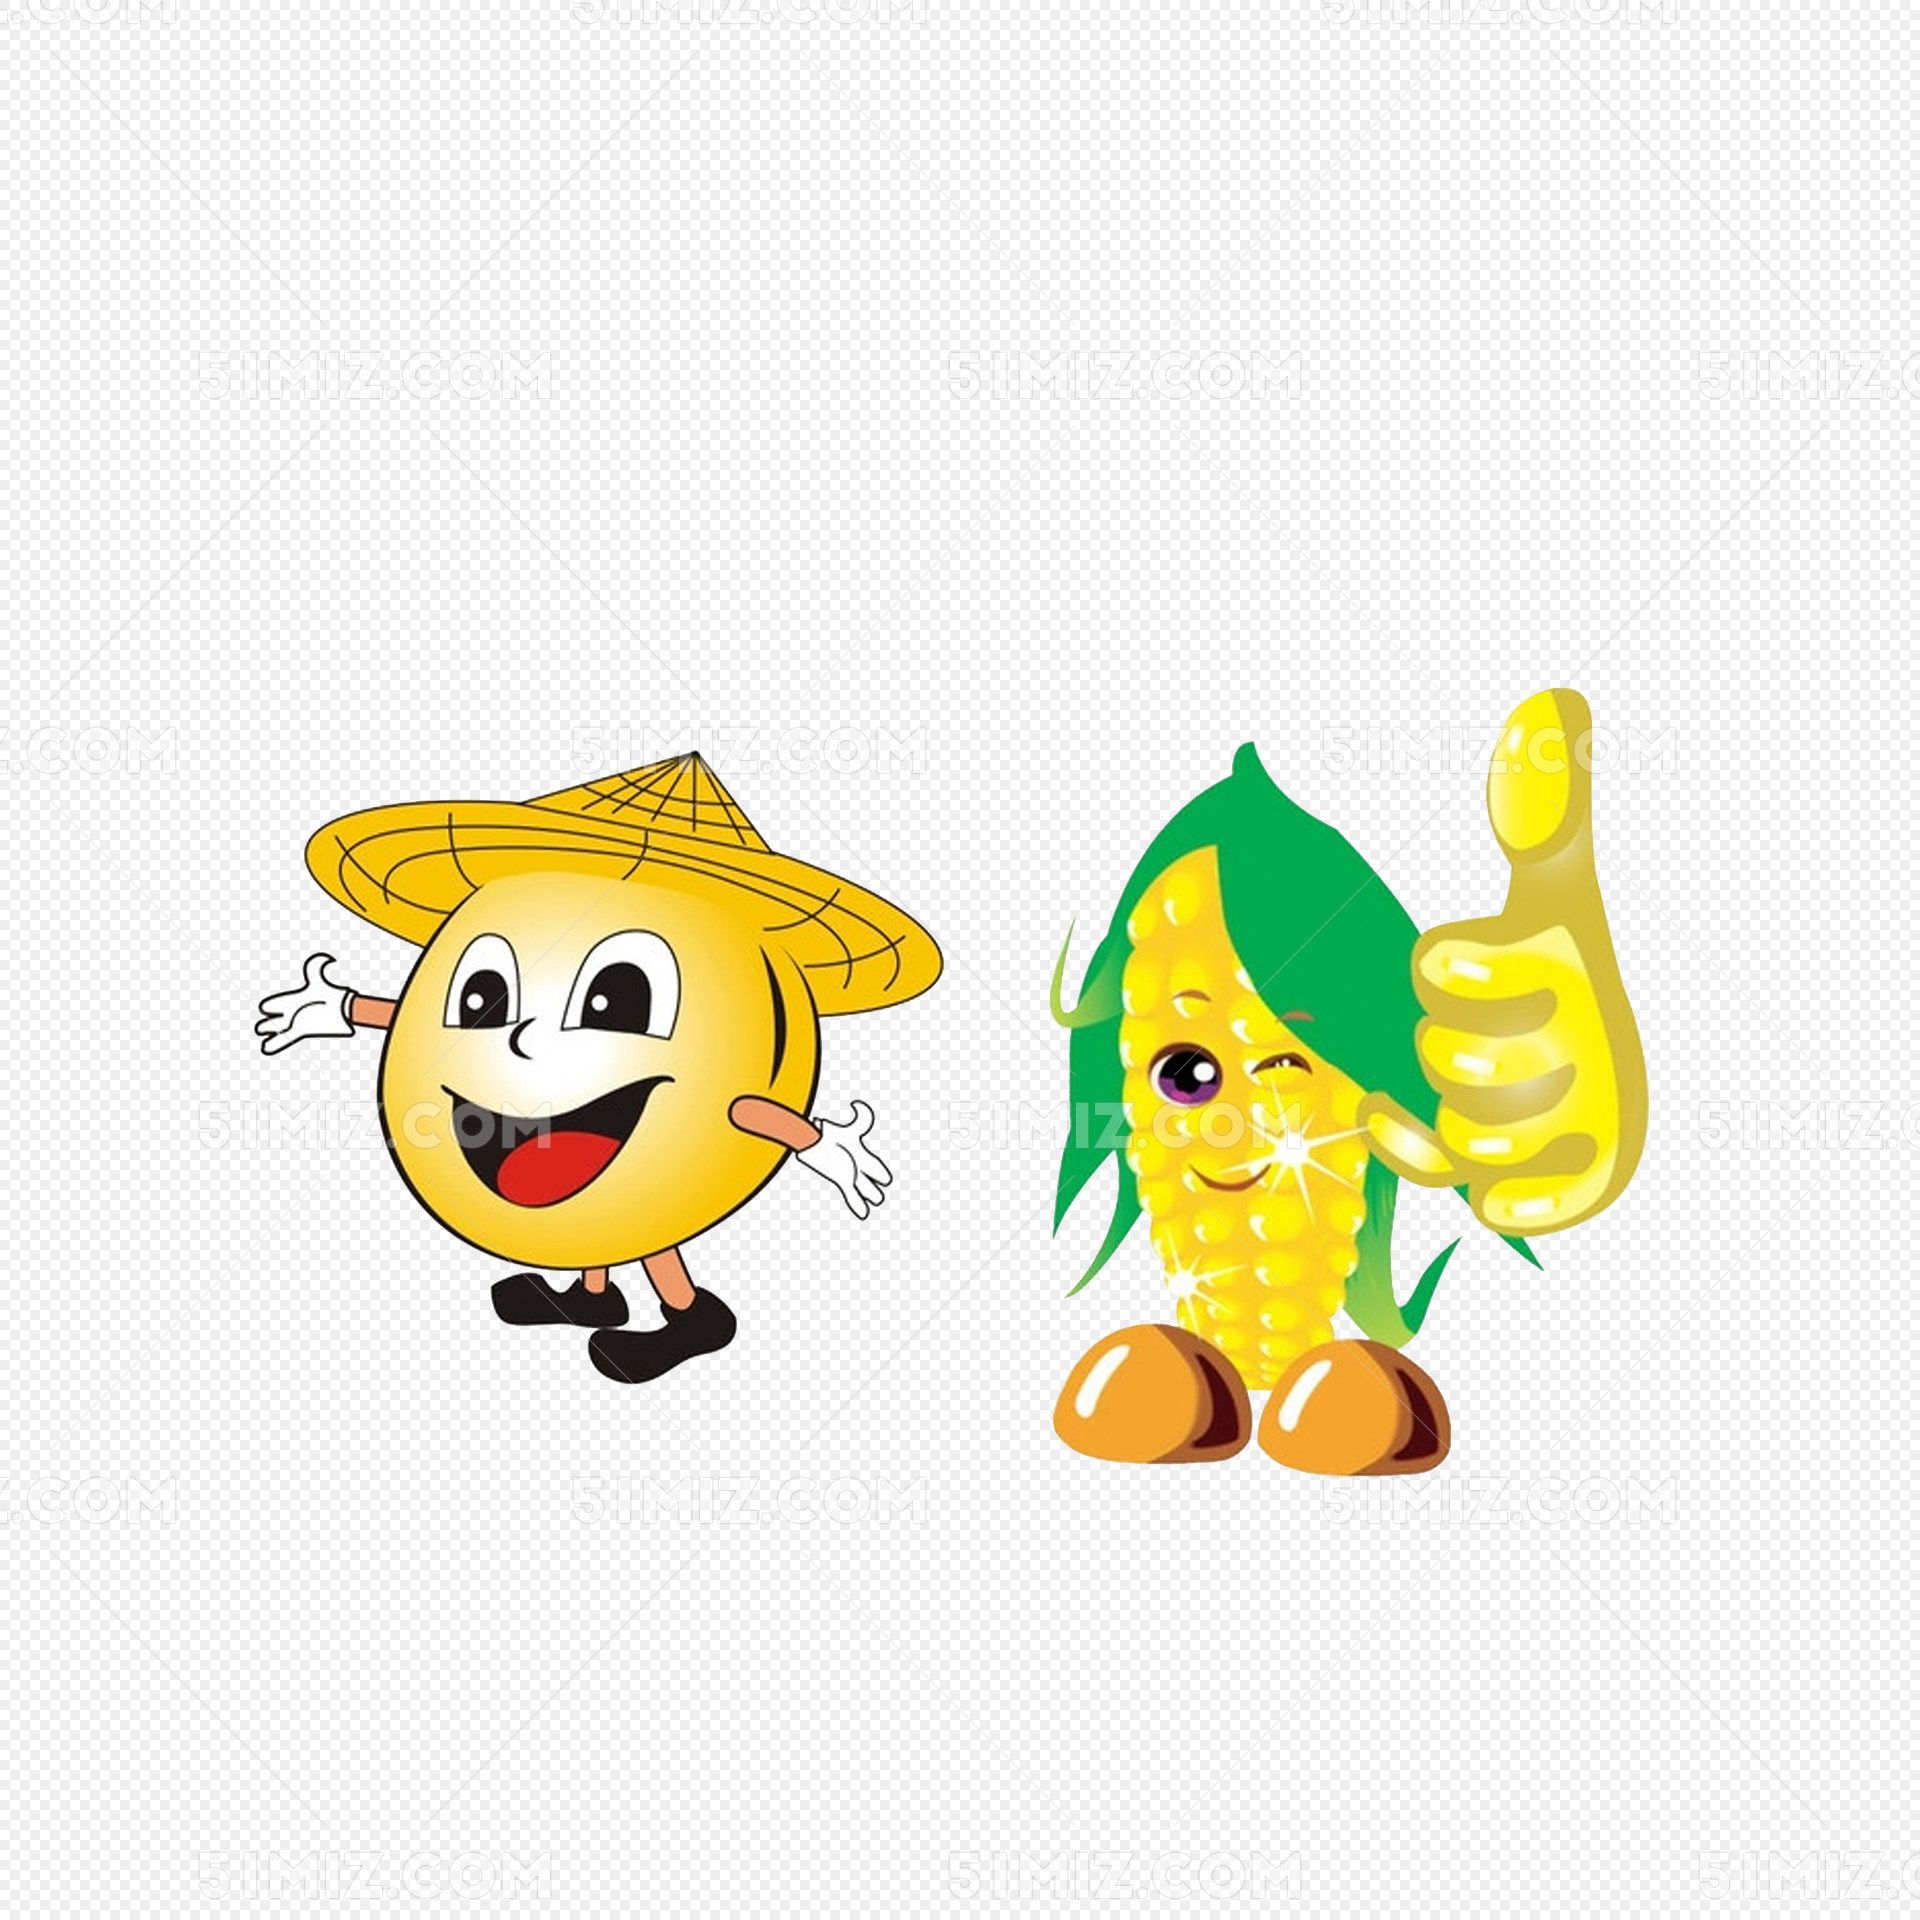 黃色的玉米 新鮮的玉米 卡通玉米 玉米插畫, 黃玉米, 新鮮玉米, 卡通玉米素材圖案，PSD和PNG圖片免費下載